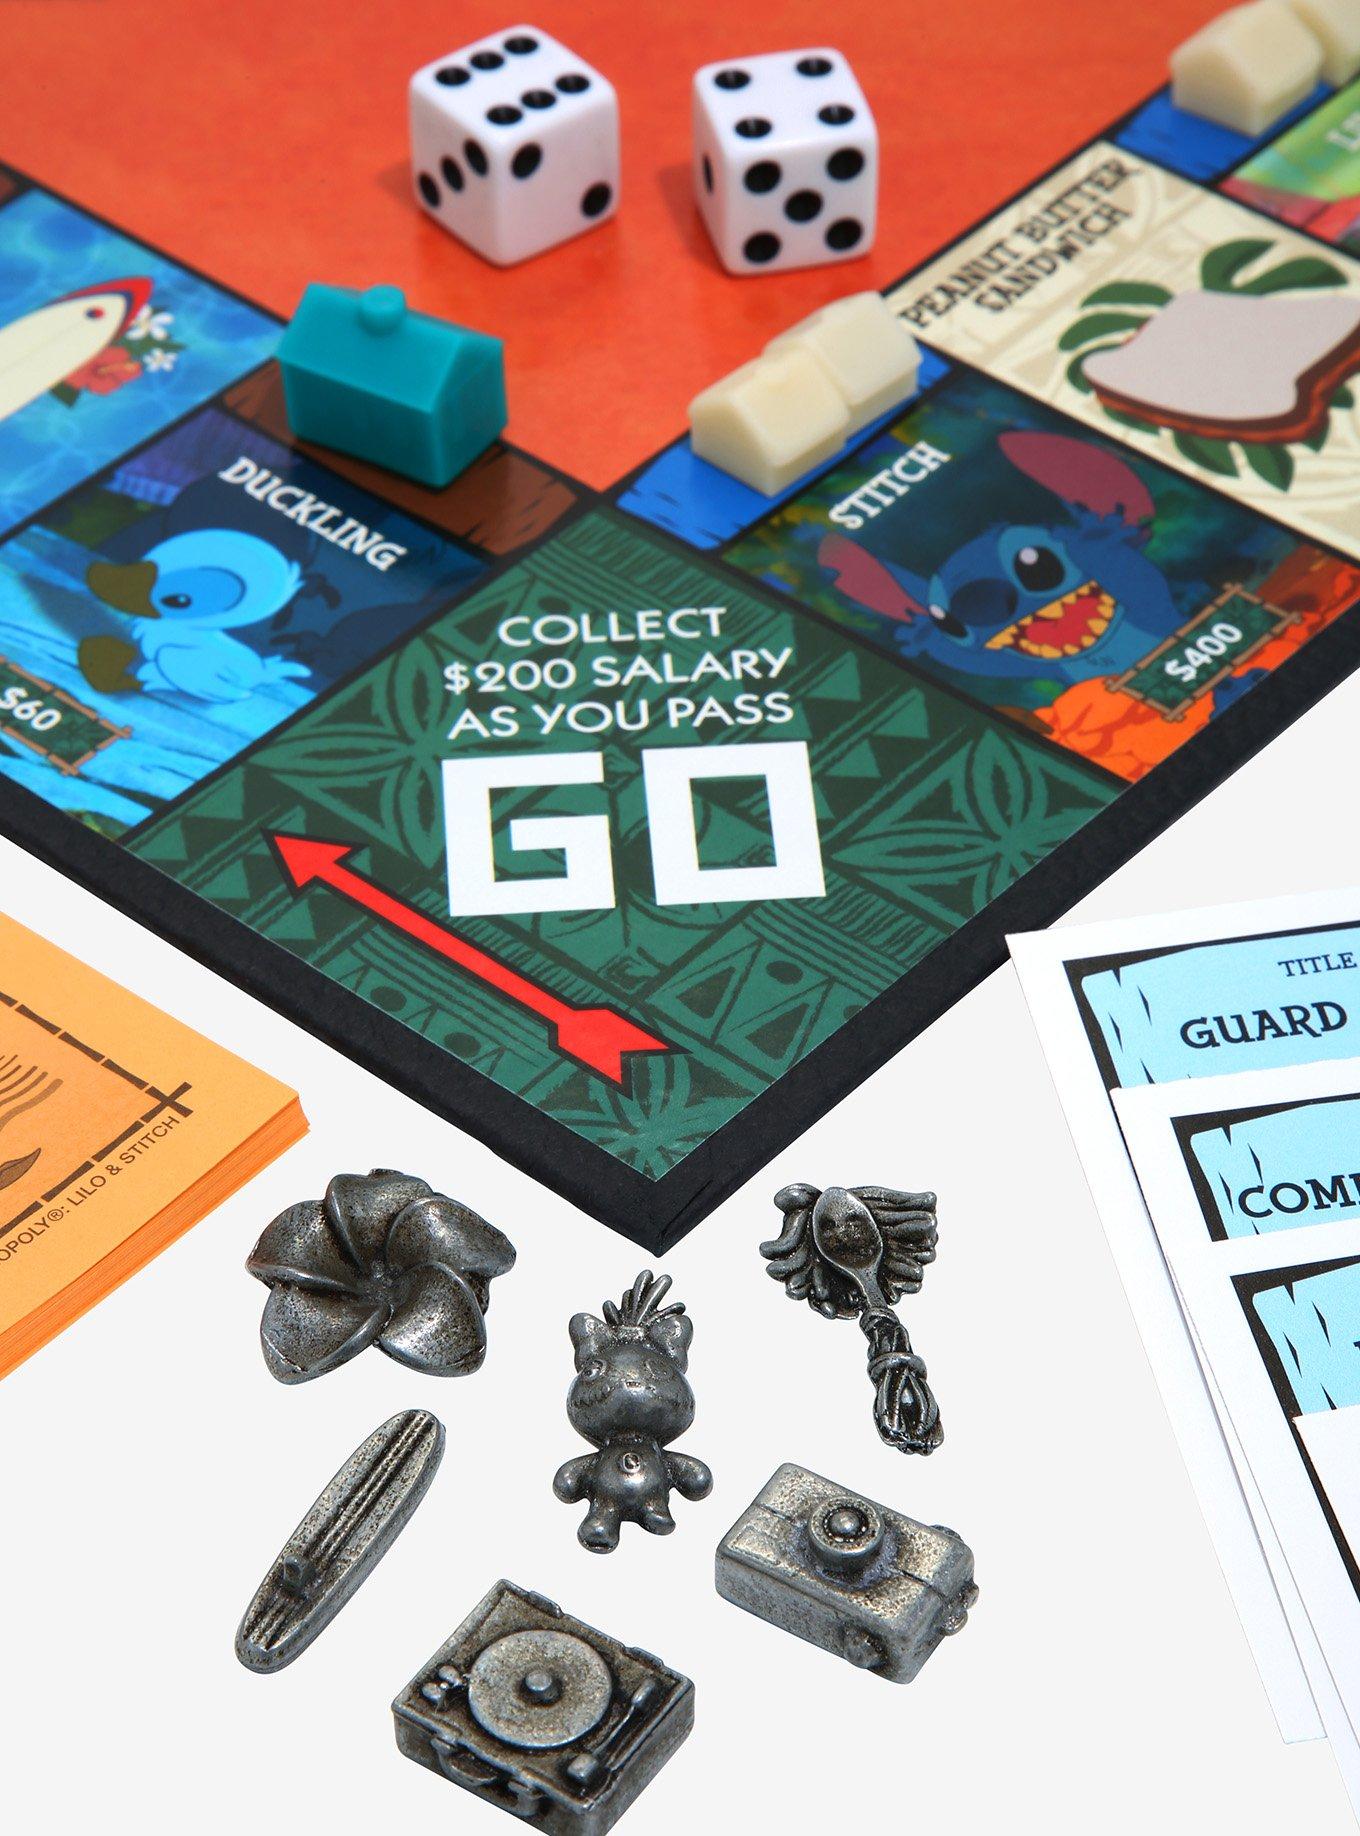  Monopoly: Disney Lilo & Stitch